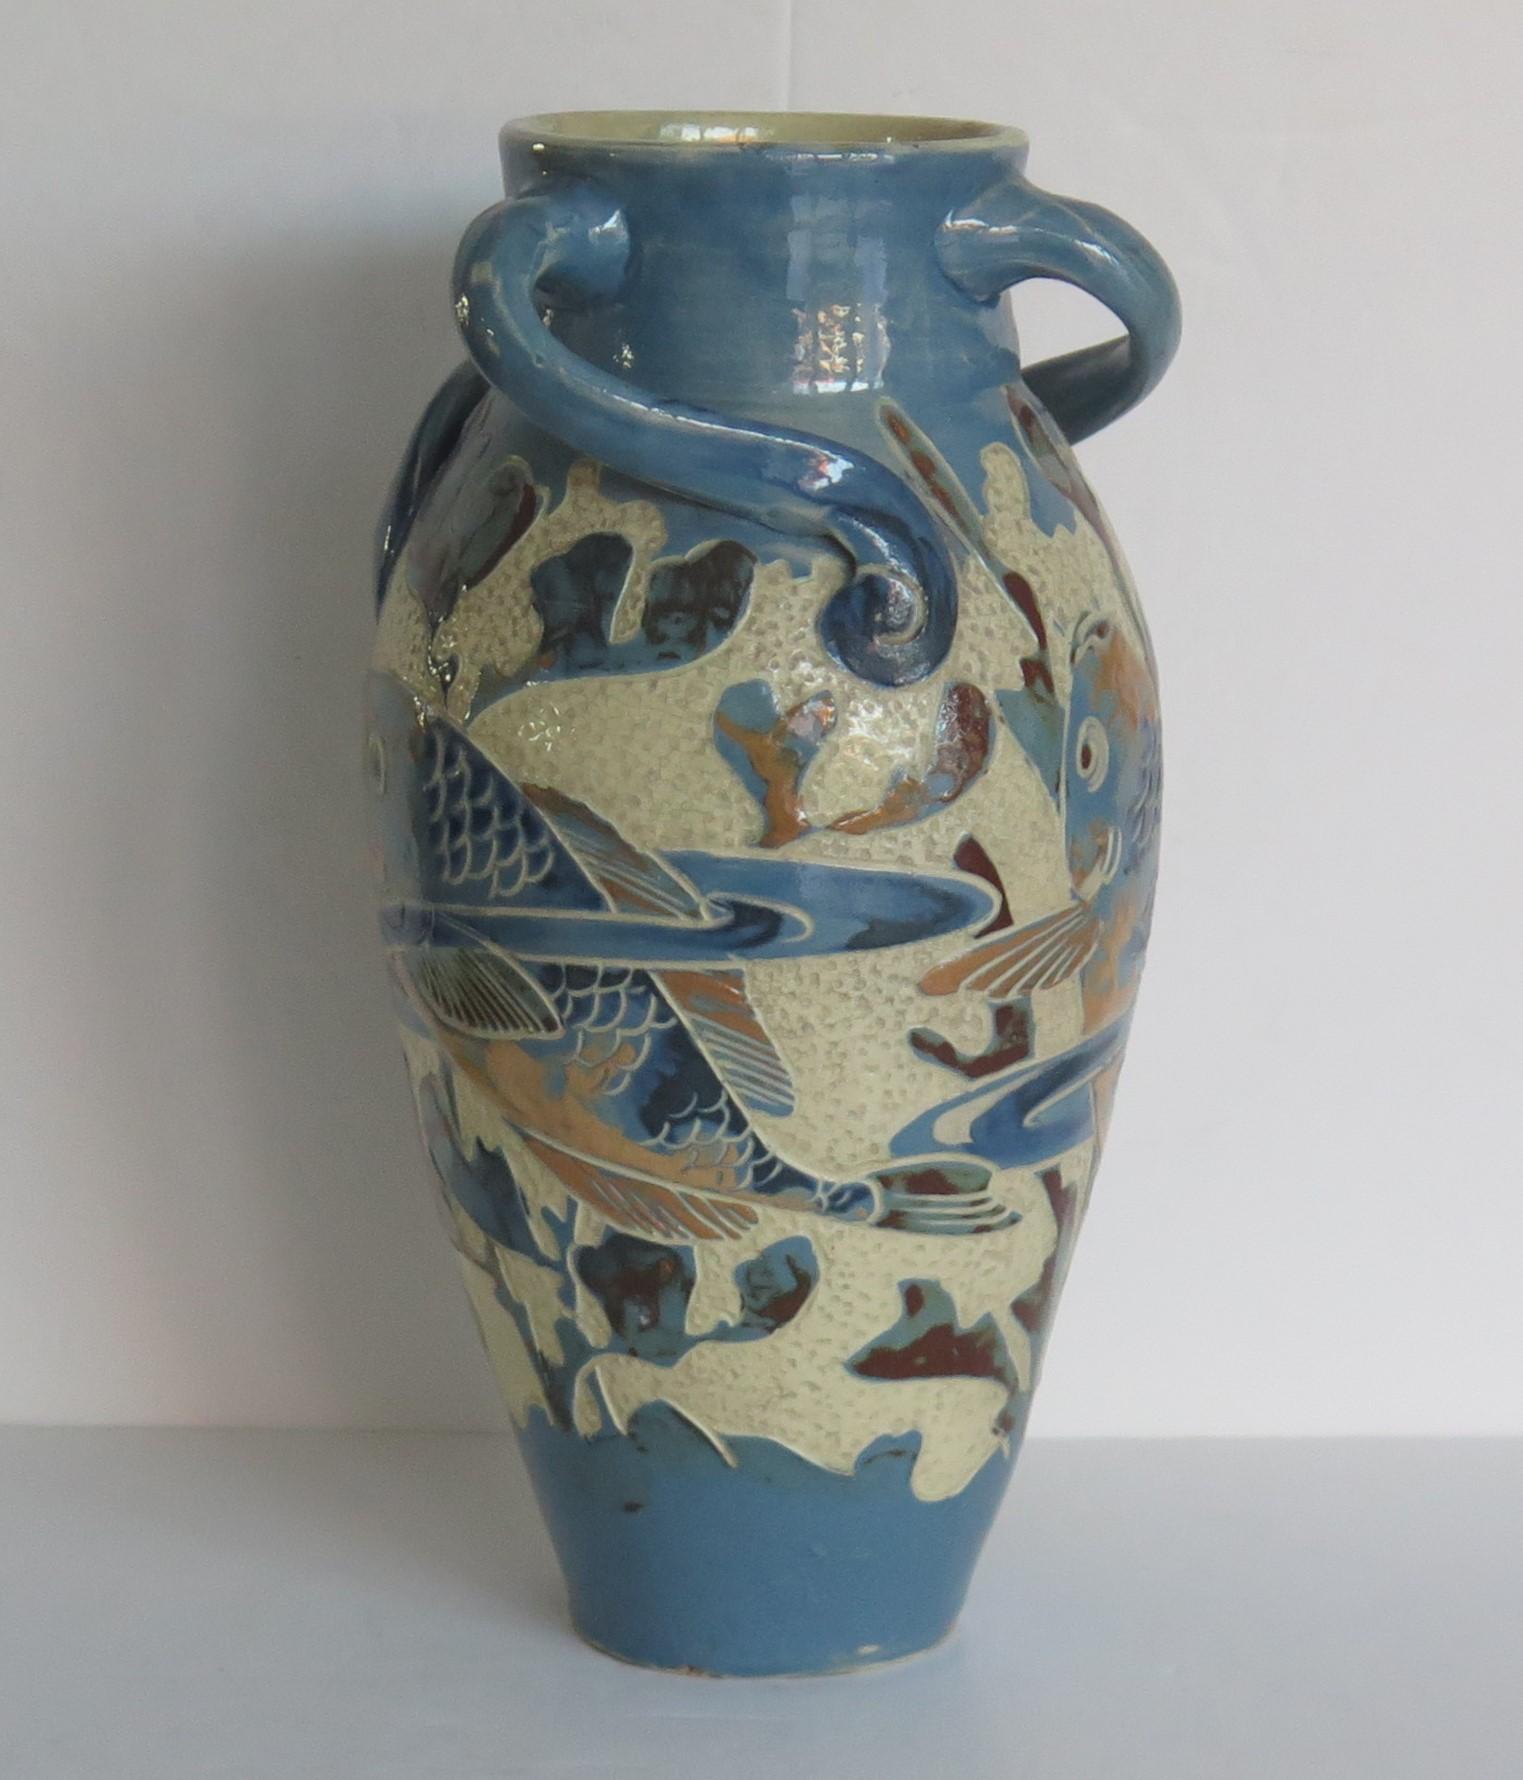 Il s'agit d'un bon vase en poterie d'art, avec trois anses angulaires, toutes modelées à la main selon la méthode du sgraffite, avec une décoration de poissons, fabriqué à la main par C H Brannam's, en Angleterre, et datant de la fin de la période